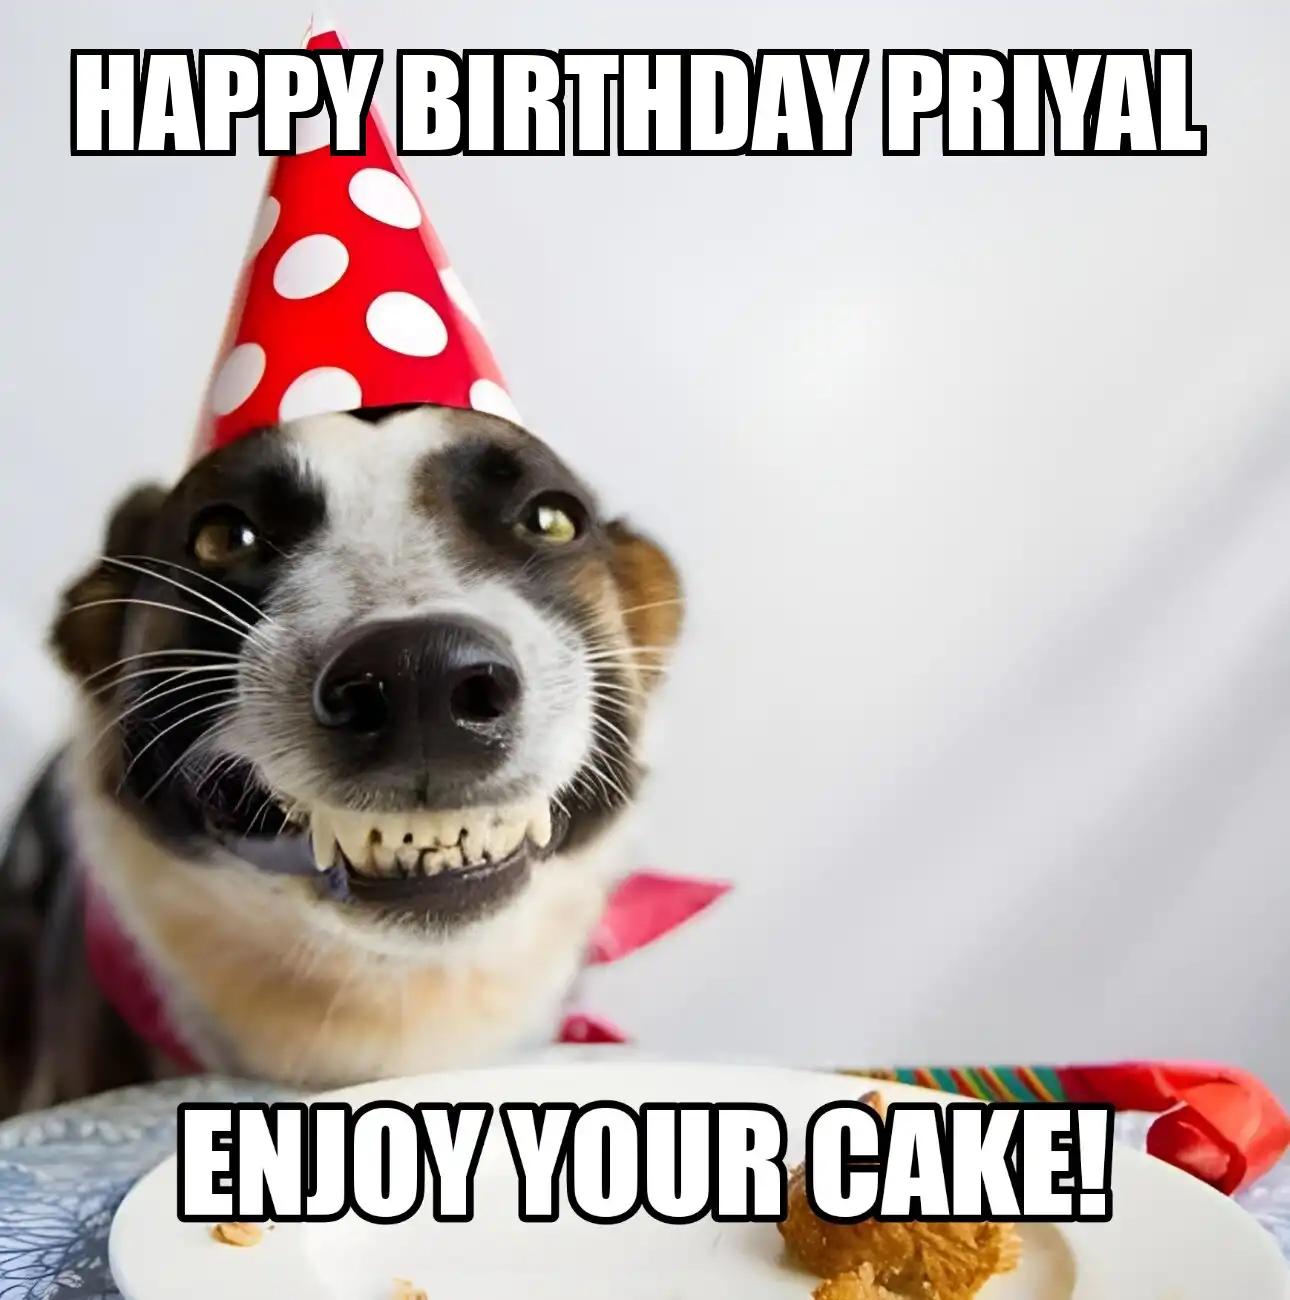 Happy Birthday Priyal Enjoy Your Cake Dog Meme